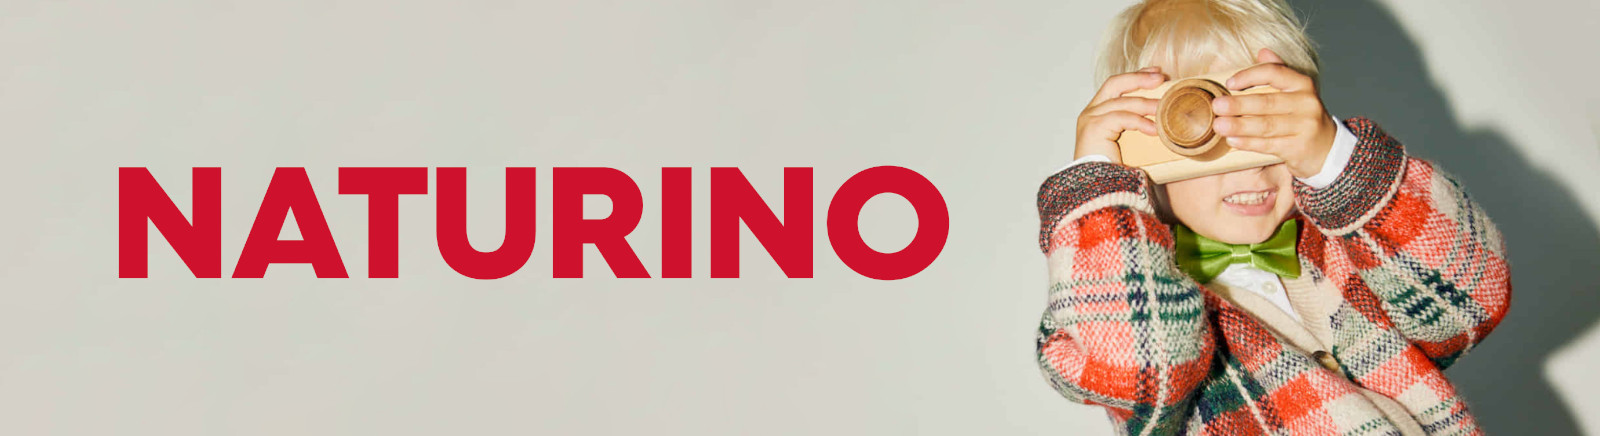 Naturino/Falcotto Lauflernschuhe online kaufen im Shop von GISY